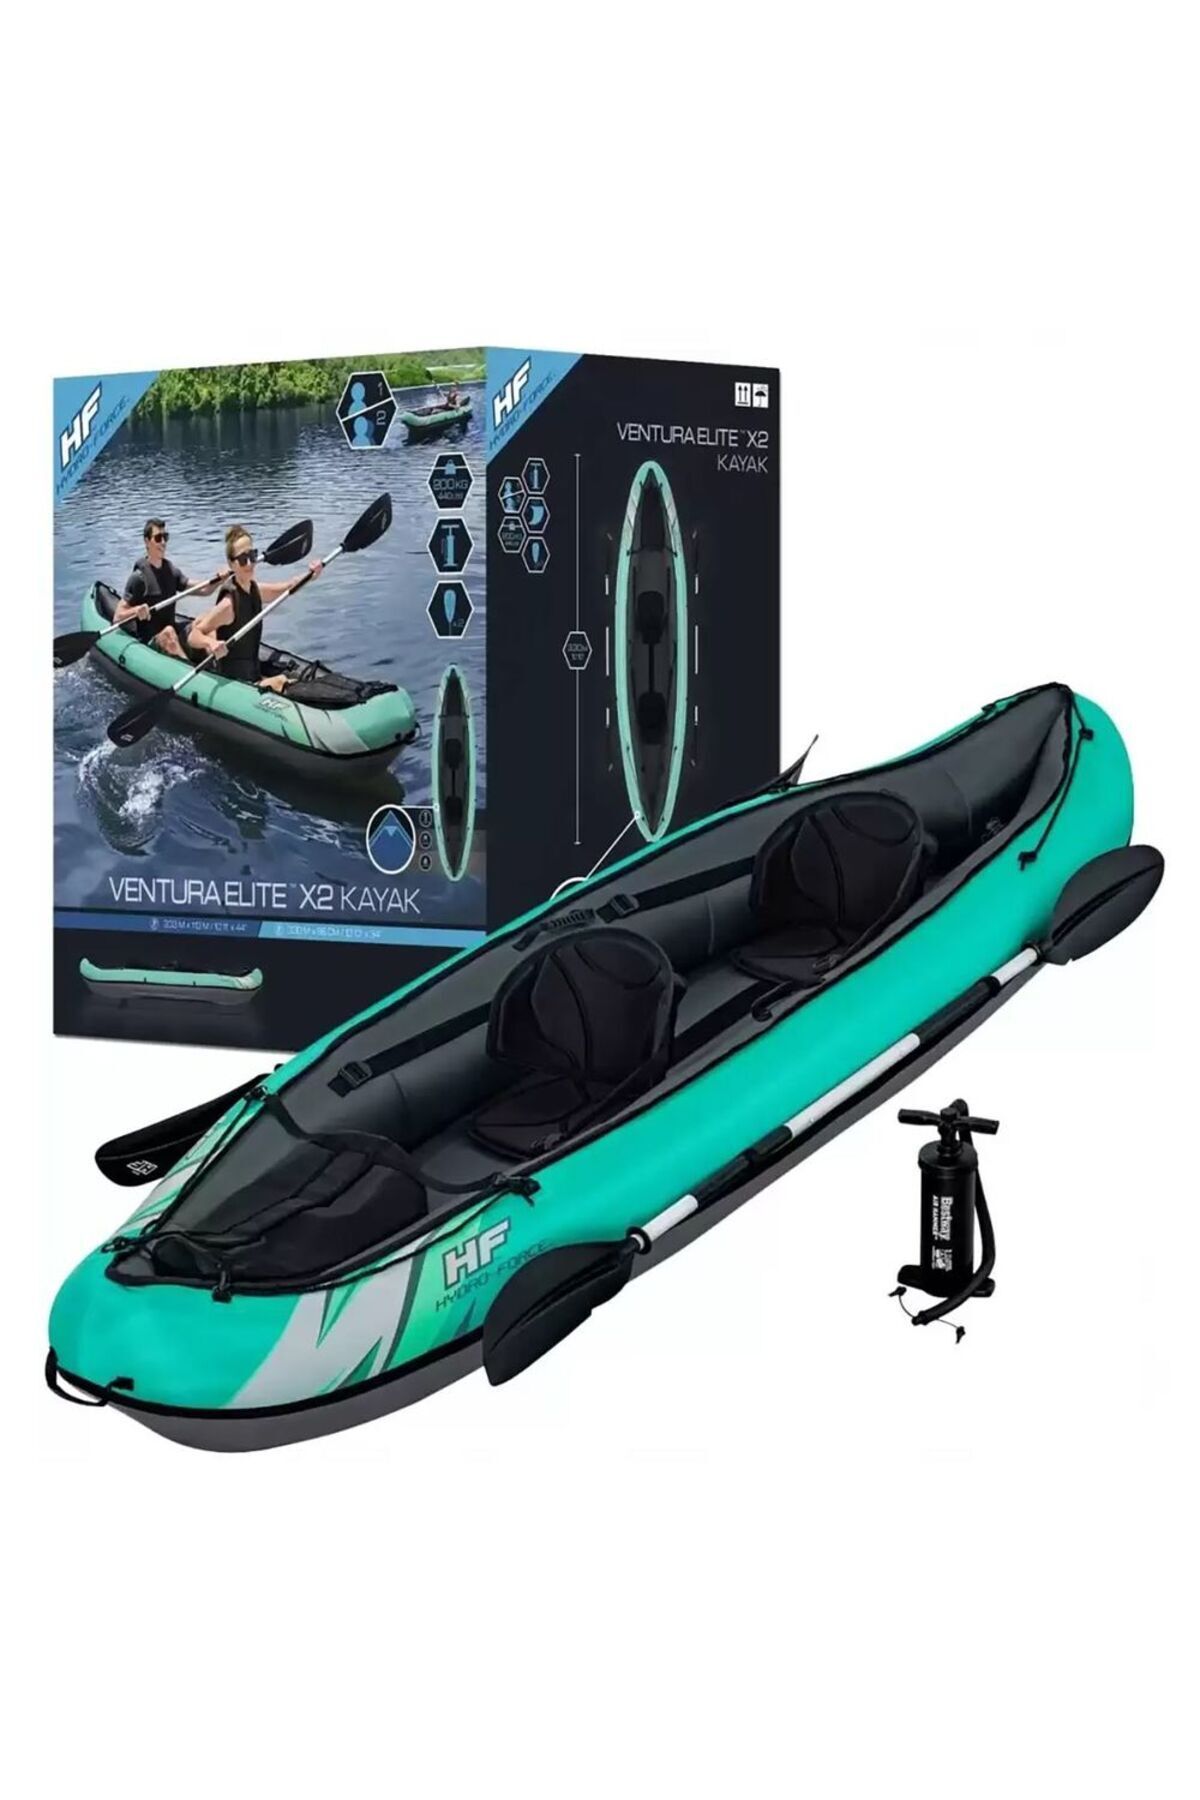 Bestway Hydro-force Ventura Elite X2 Kayak